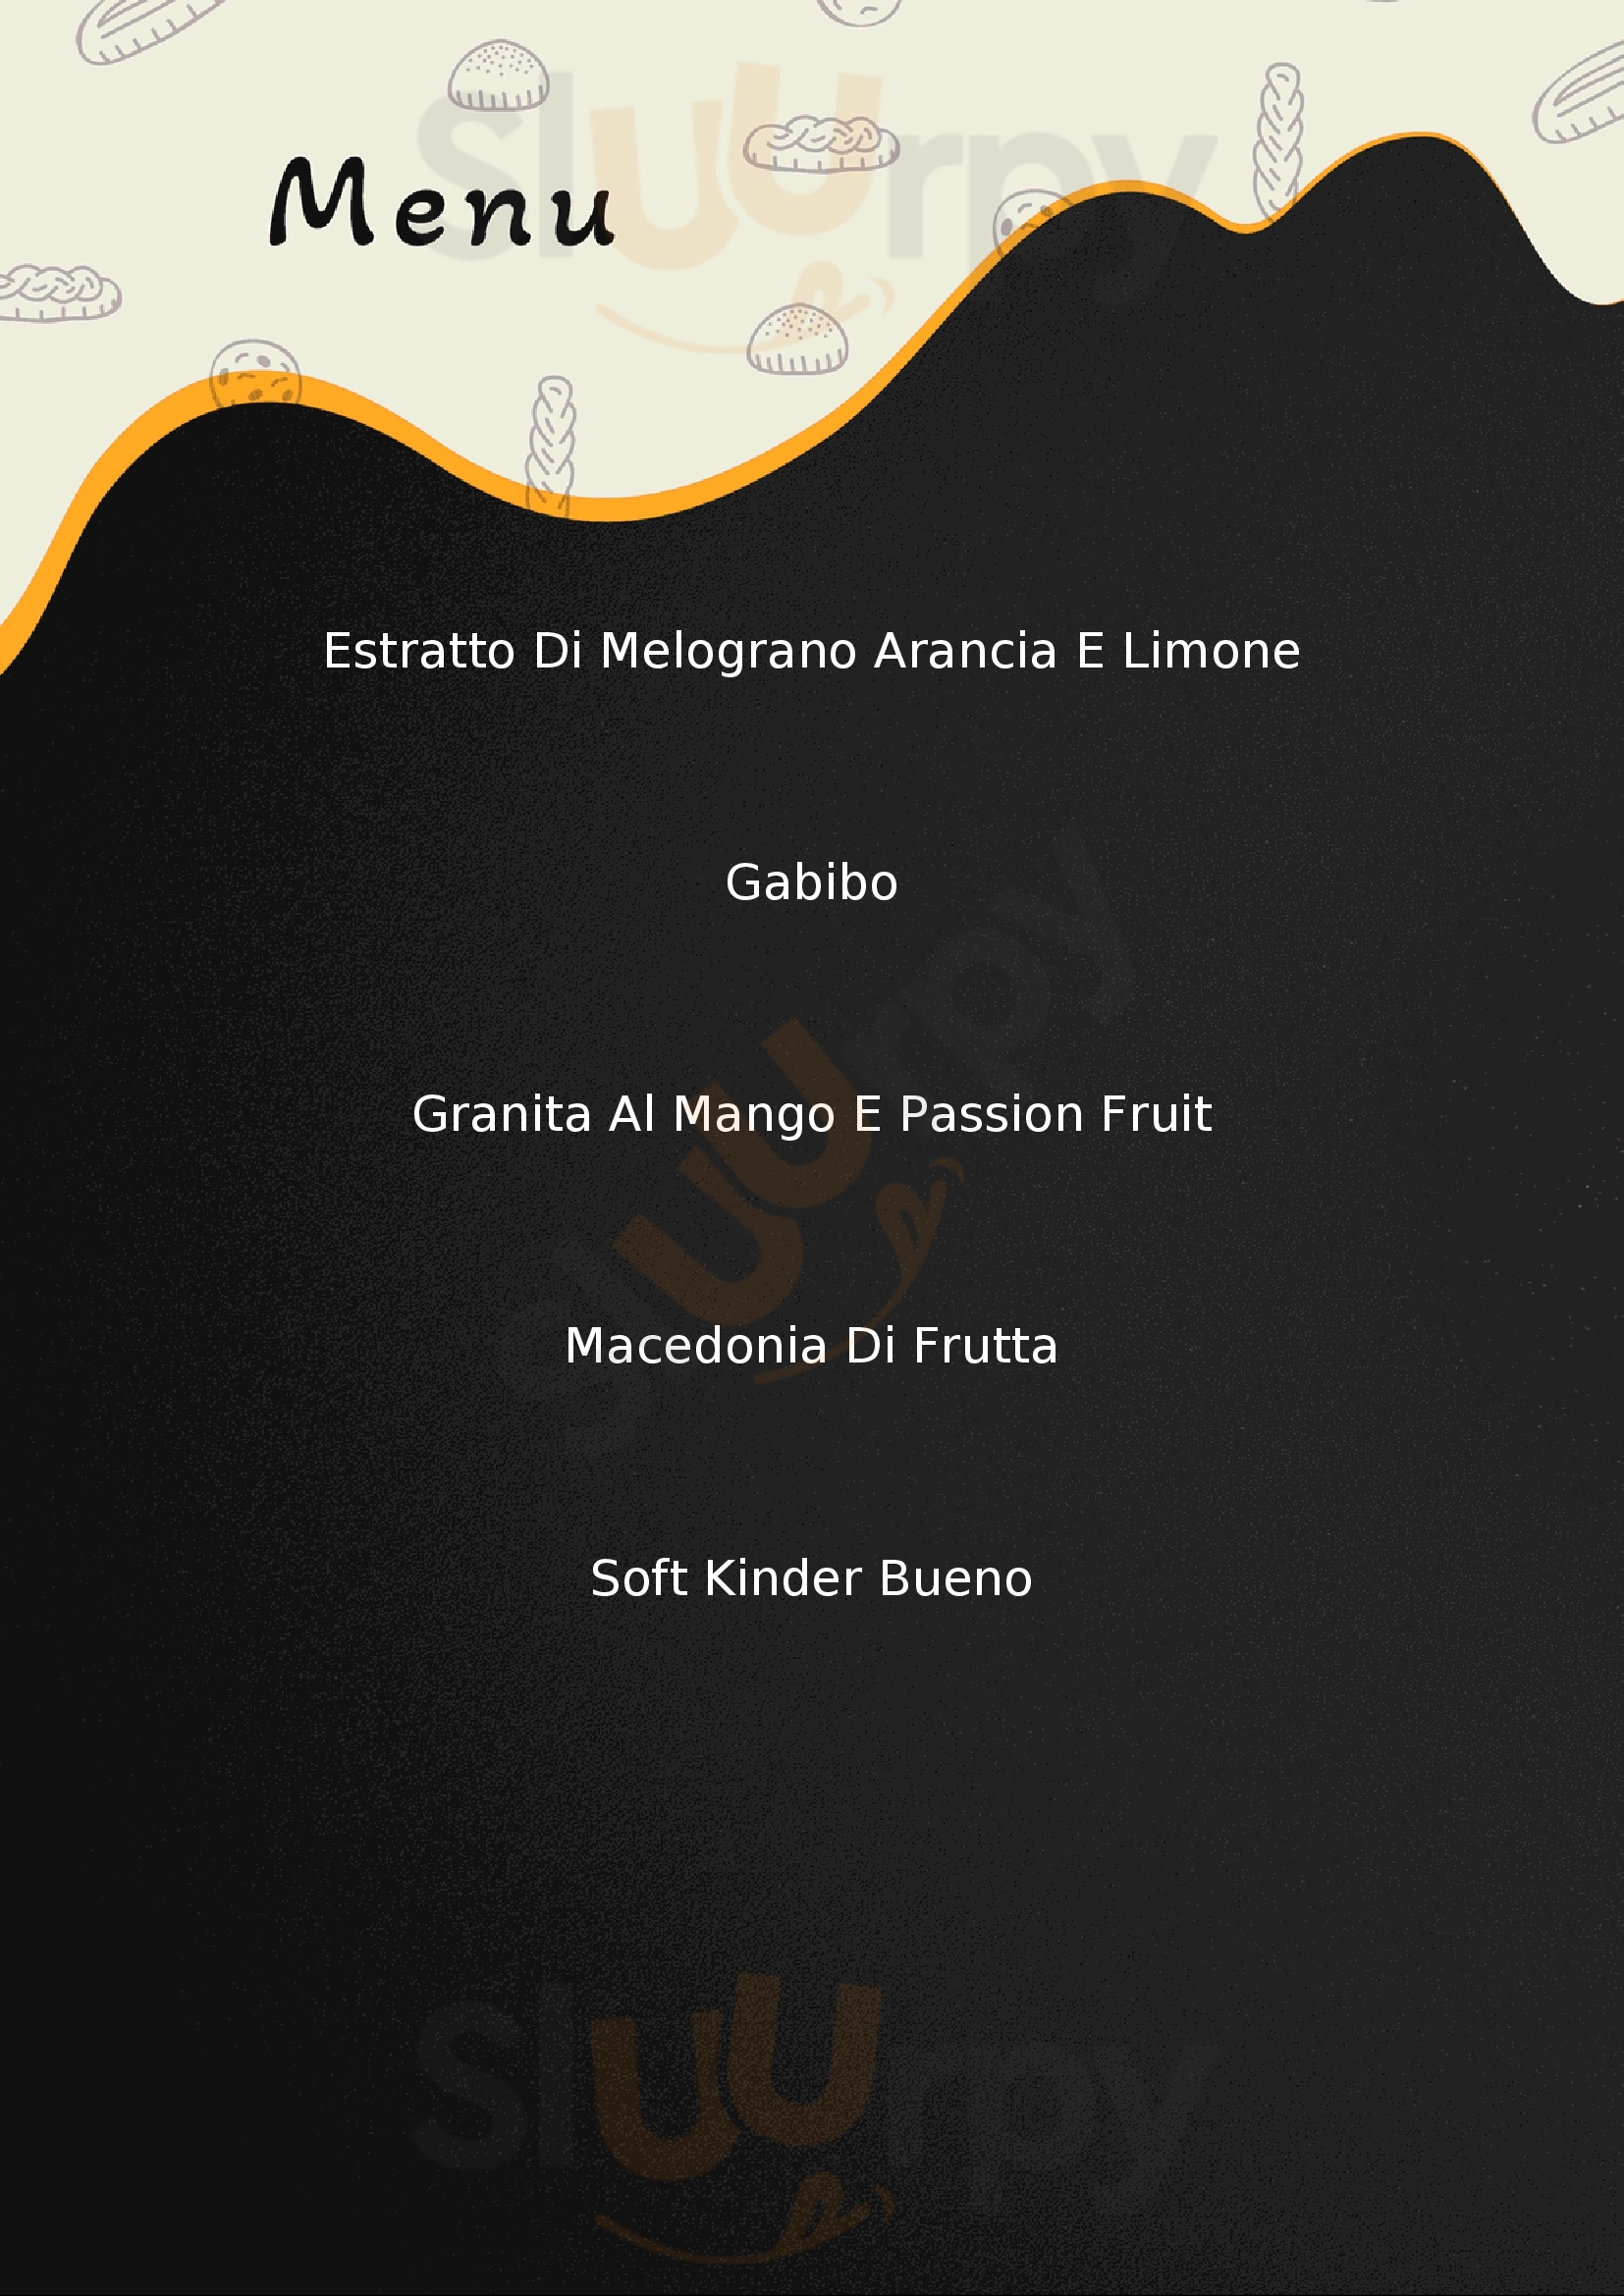 Genny Fruit San Giorgio a Cremano menù 1 pagina